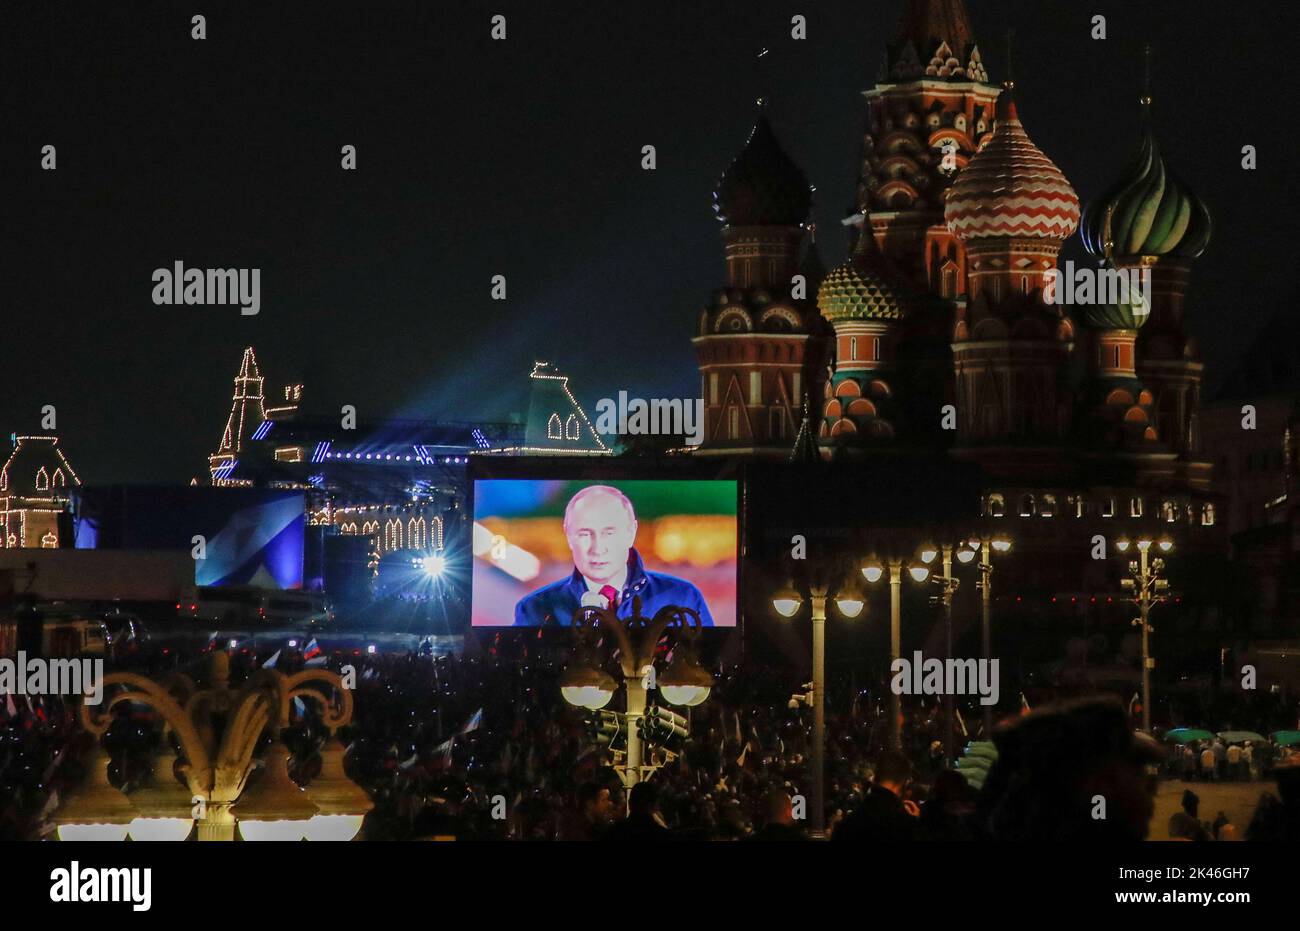 Le président russe Vladimir Poutine est vu sur un écran lors de la diffusion d'un concert marquant l'annexion déclarée des territoires sous contrôle russe de quatre régions ukrainiennes de Donetsk, Luhansk, Kherson et Zaporizhzhia, Après avoir tenu ce que les autorités russes ont appelé des référendums dans les zones occupées de l'Ukraine qui ont été condamnées par Kiev et les gouvernements du monde entier, près de la cathédrale Saint-Basile et de la place Rouge dans le centre de Moscou, Russie, 30 septembre 2022. PHOTOGRAPHE REUTERS/REUTERS Banque D'Images